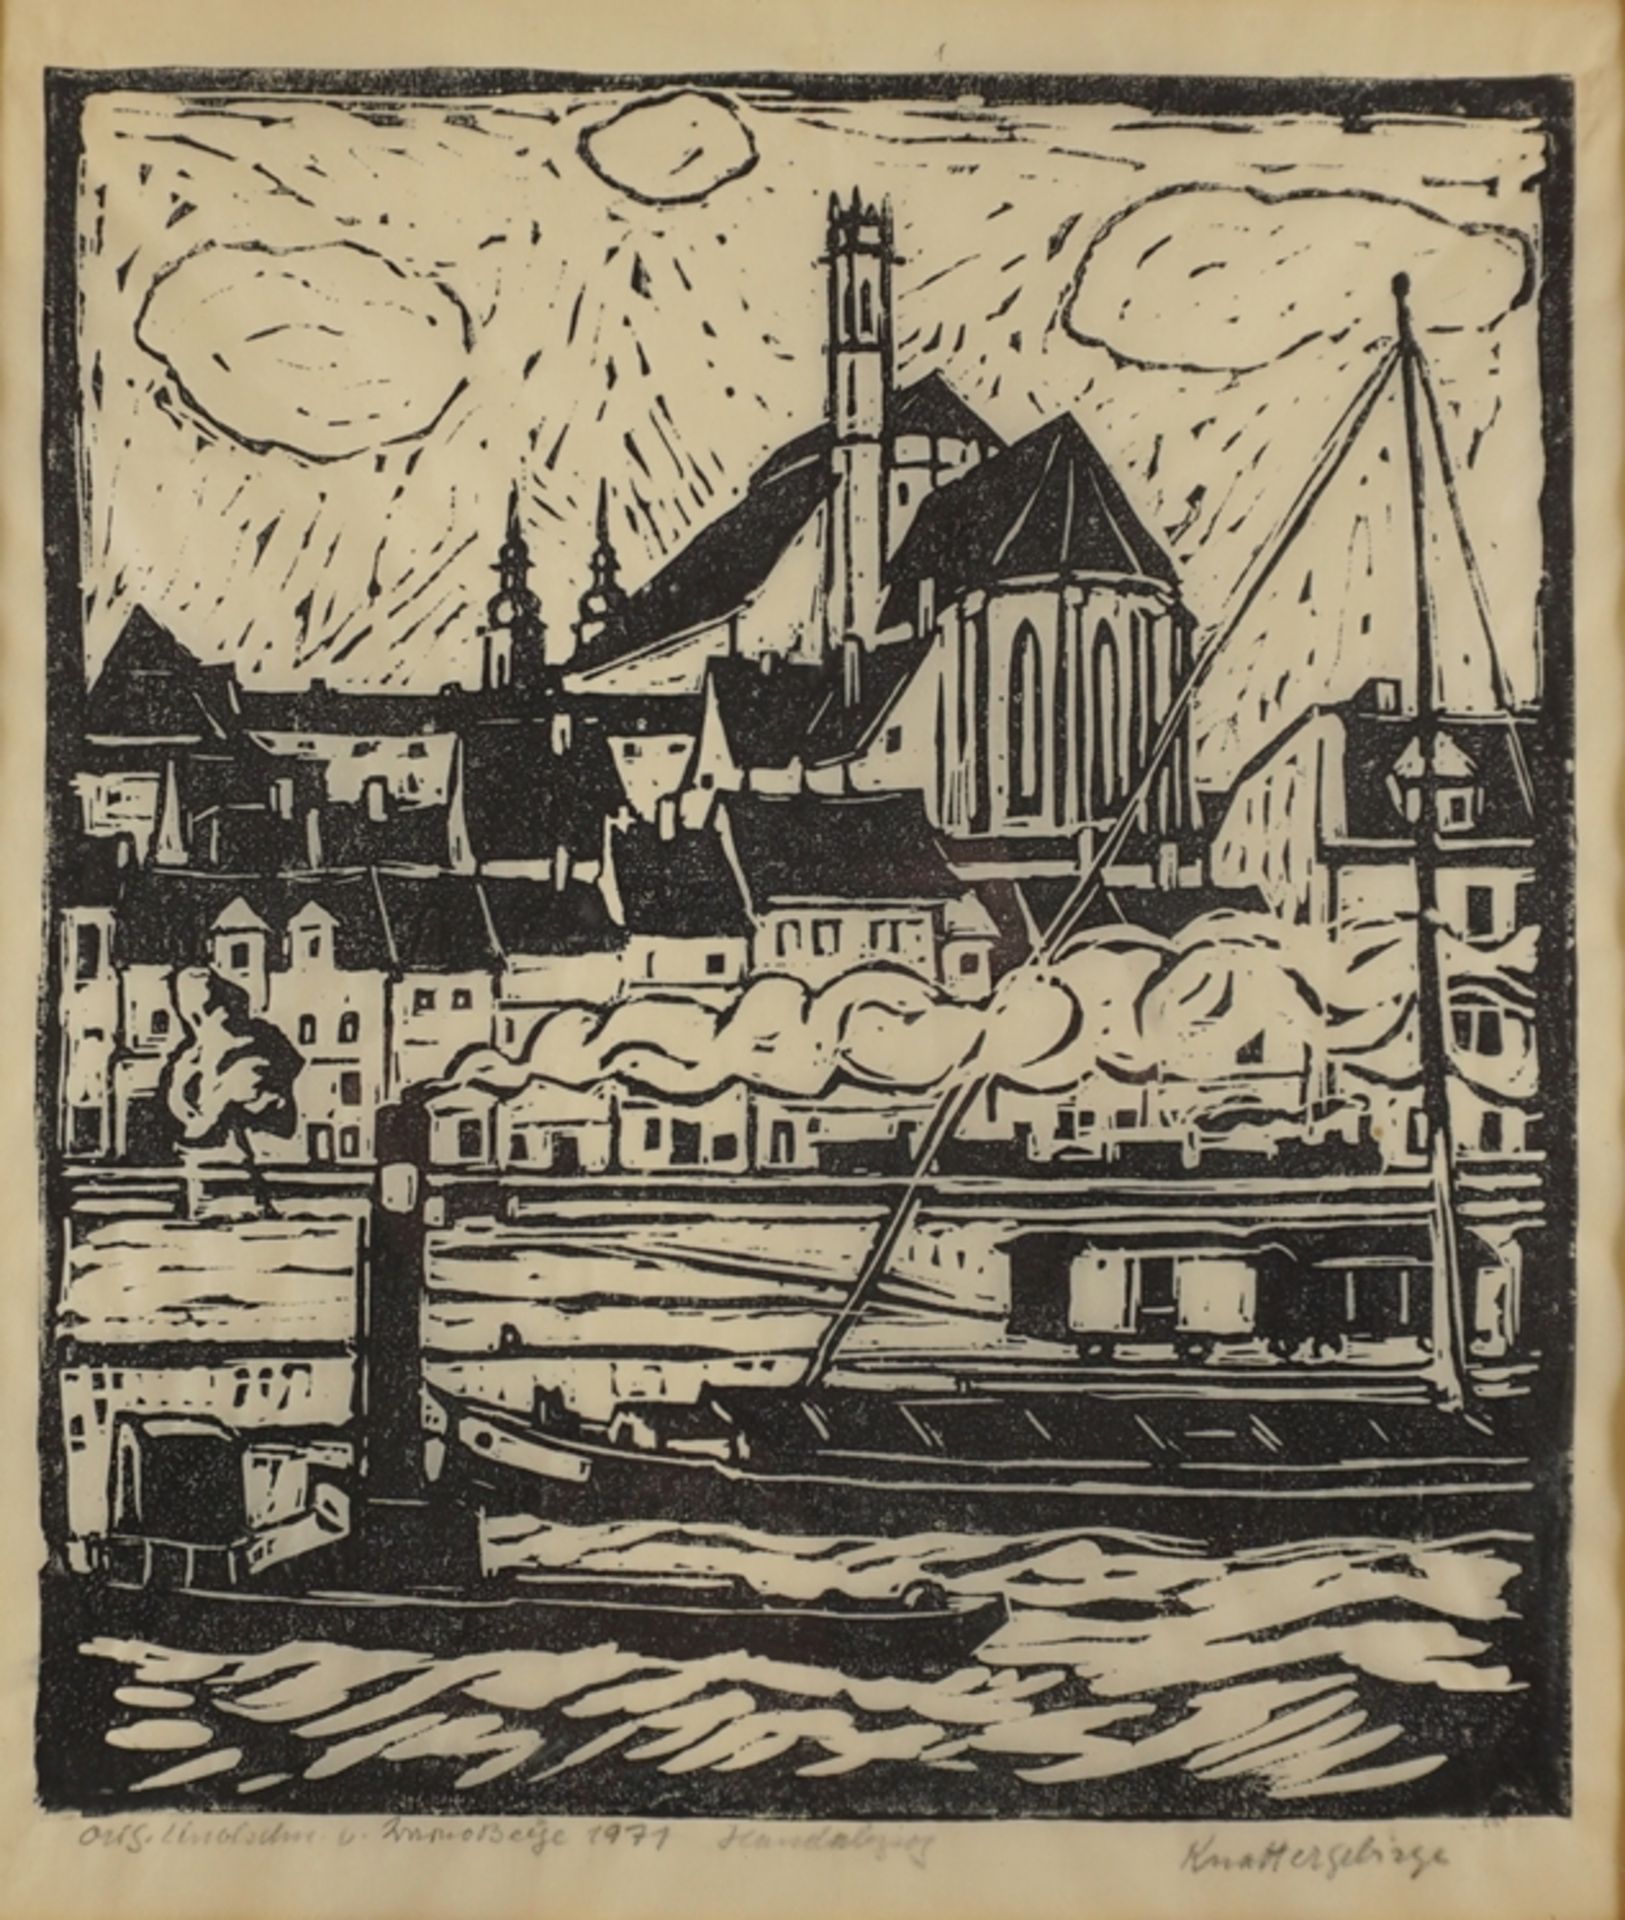 Bruno Beye (1895 - 1976, Magdeburg), "Knattergebirge (mit St. Petri, vom Werder aus gesehen)", 1971